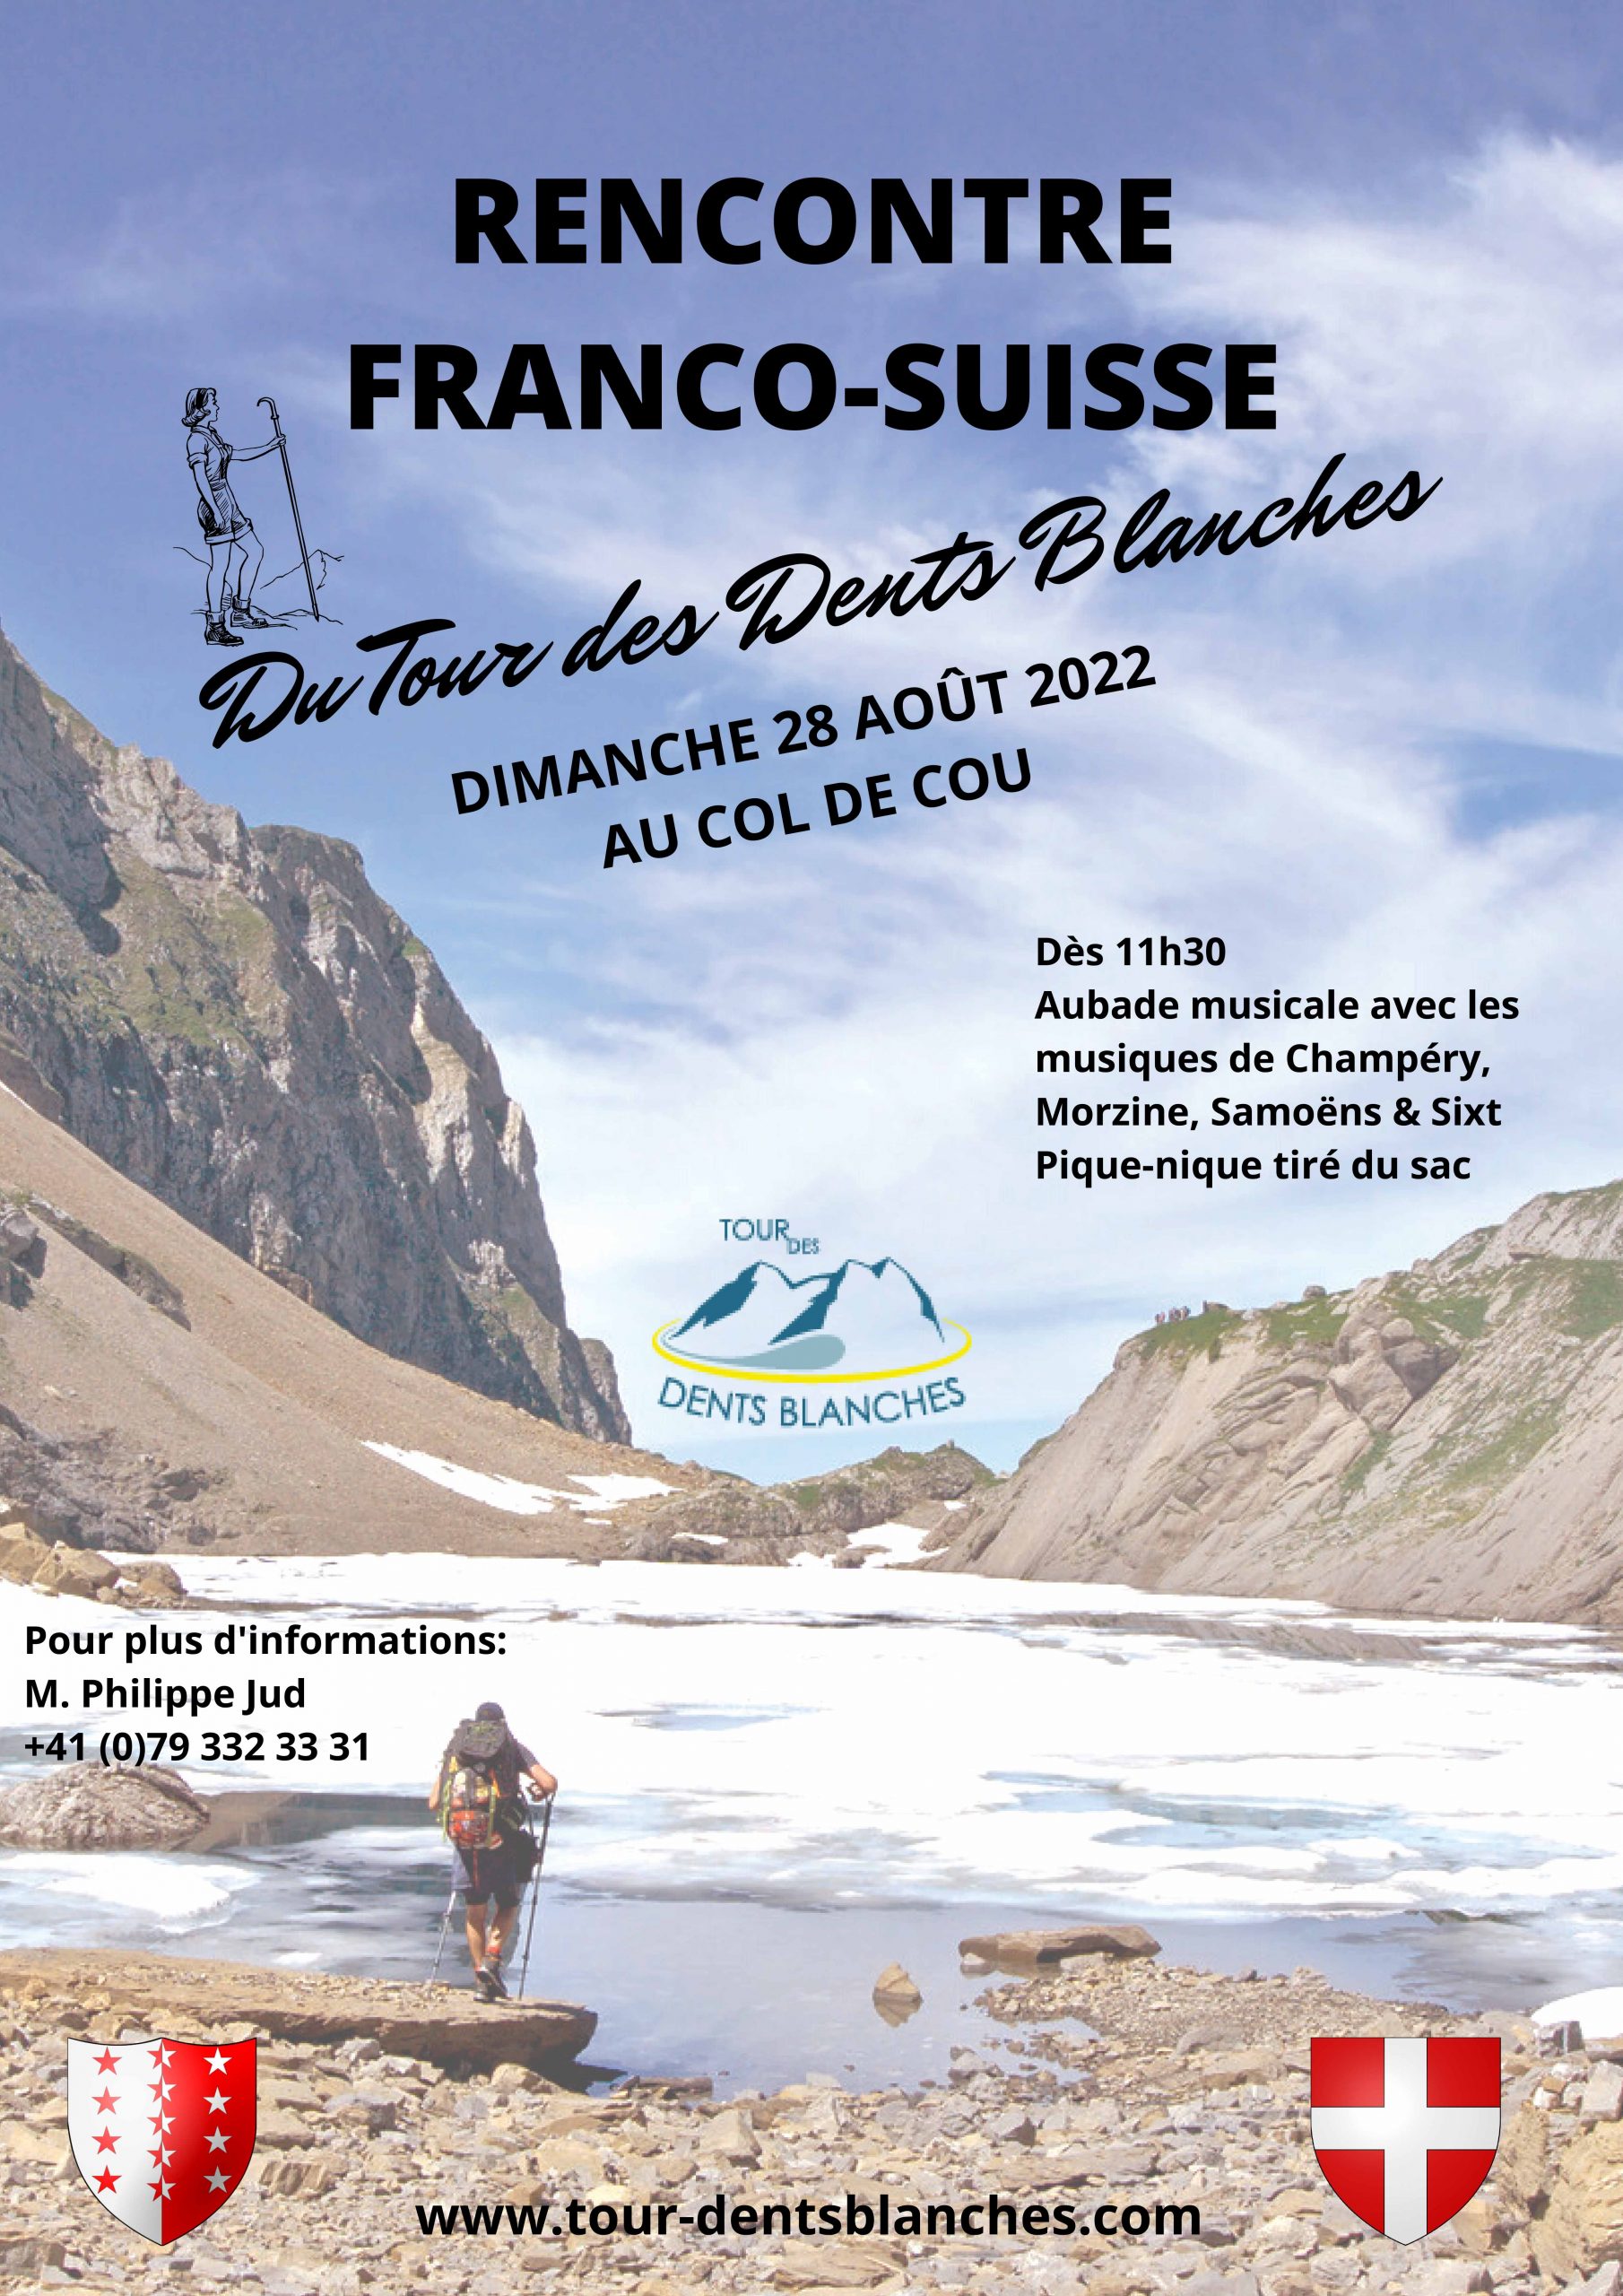 Rencontre Franco-Suisse du Tour des Dents Blanches – Dimanche 28 août 2022